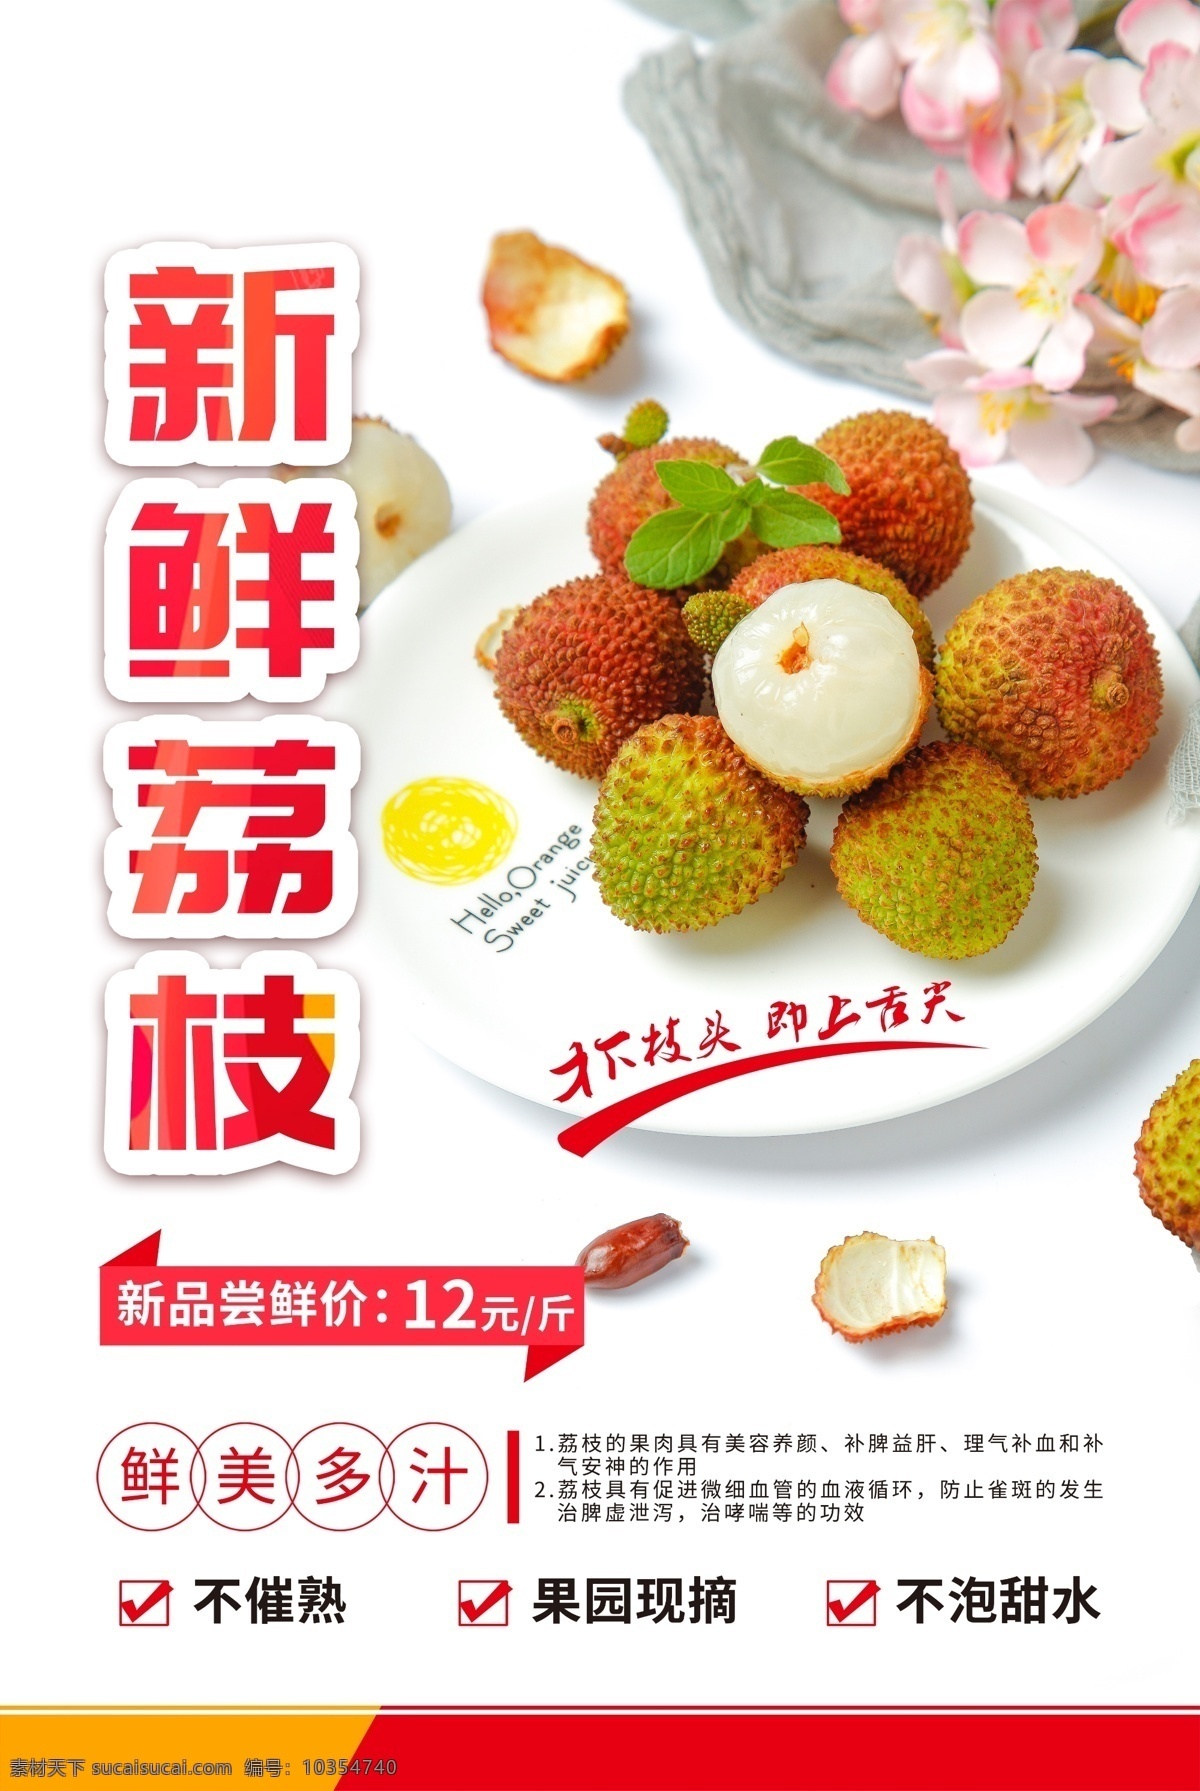 新鲜 荔枝 水果 活动 宣传海报 素材图片 新鲜荔枝 宣传 海报 餐饮美食 类